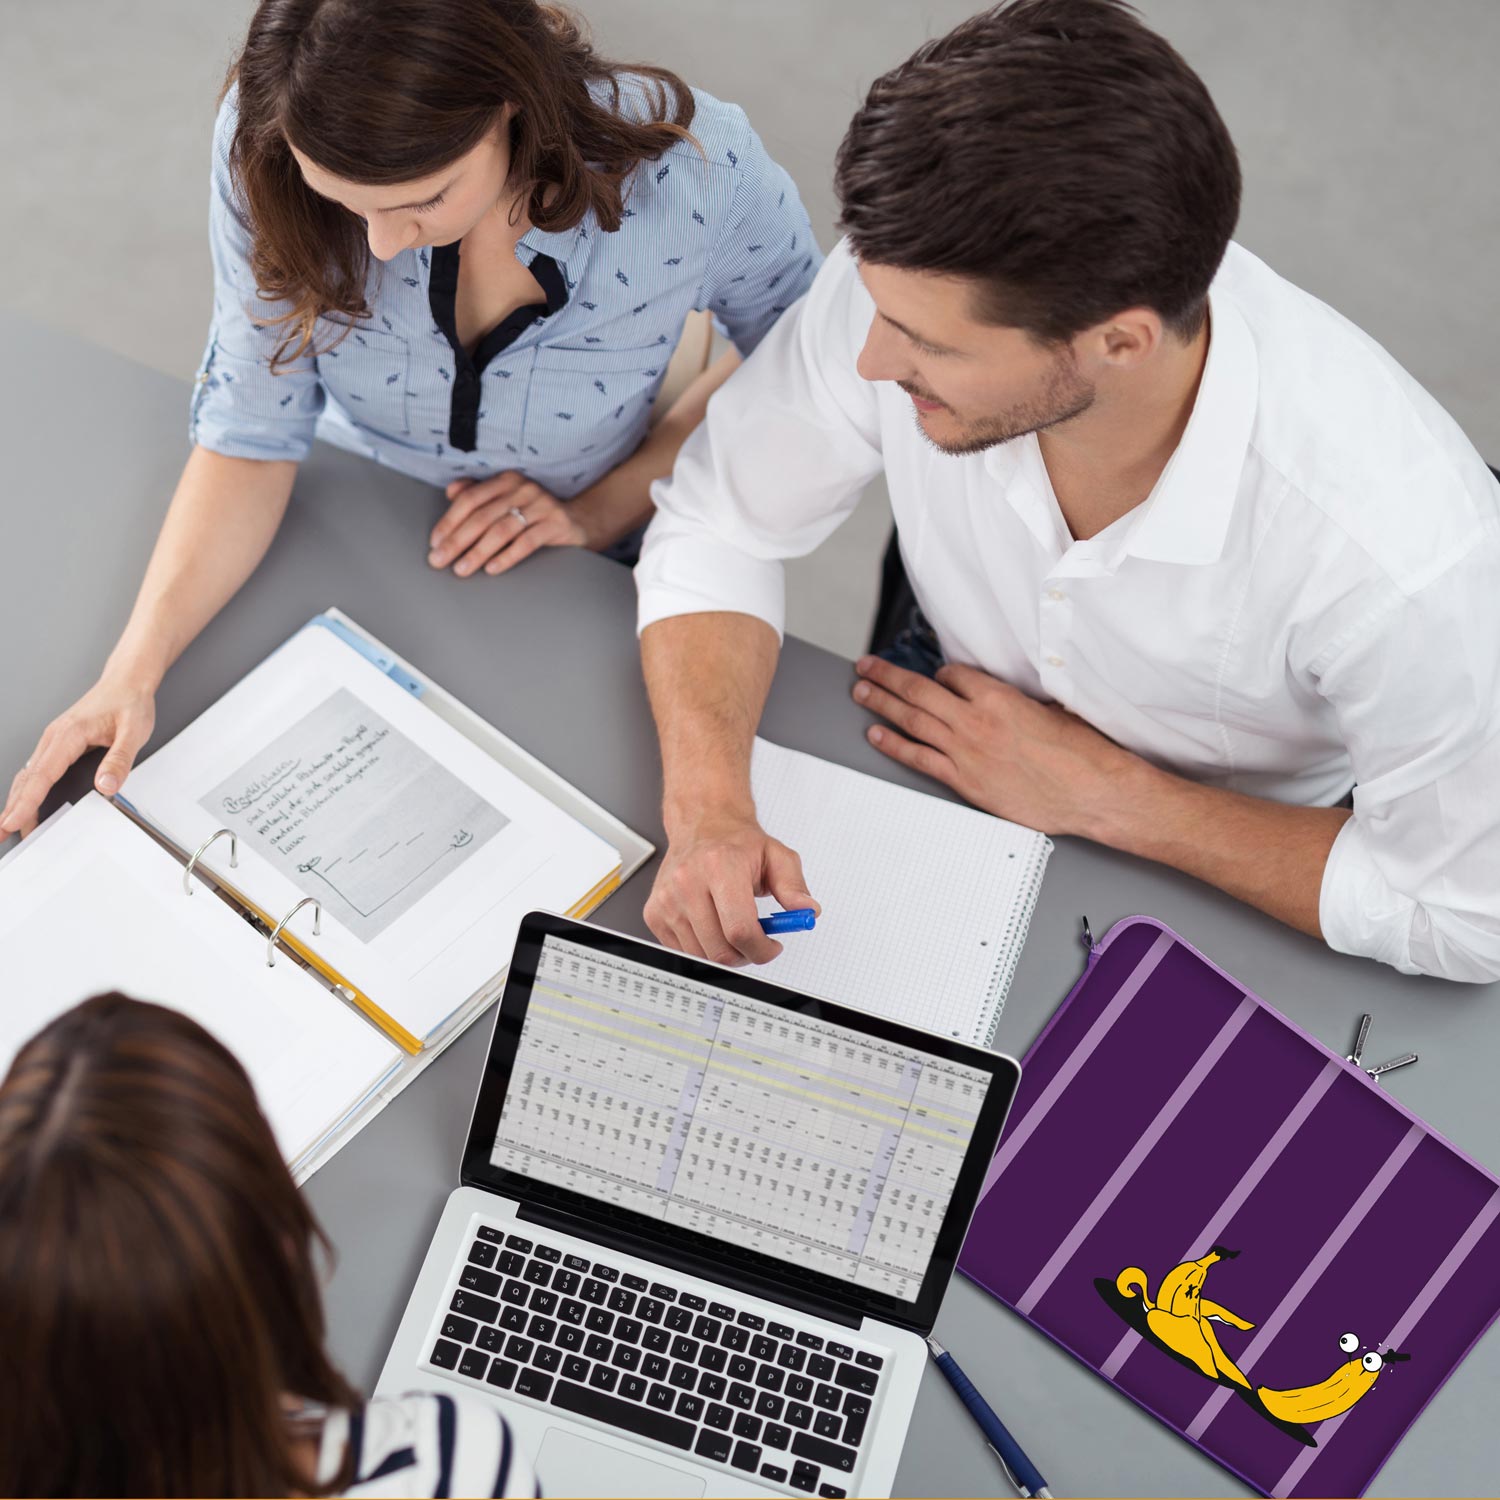 LS165 Bananas Designer Laptop Schutzhülle in violett als Business-Zubehör im Büro, bei Kunden und auf Dienstreisen